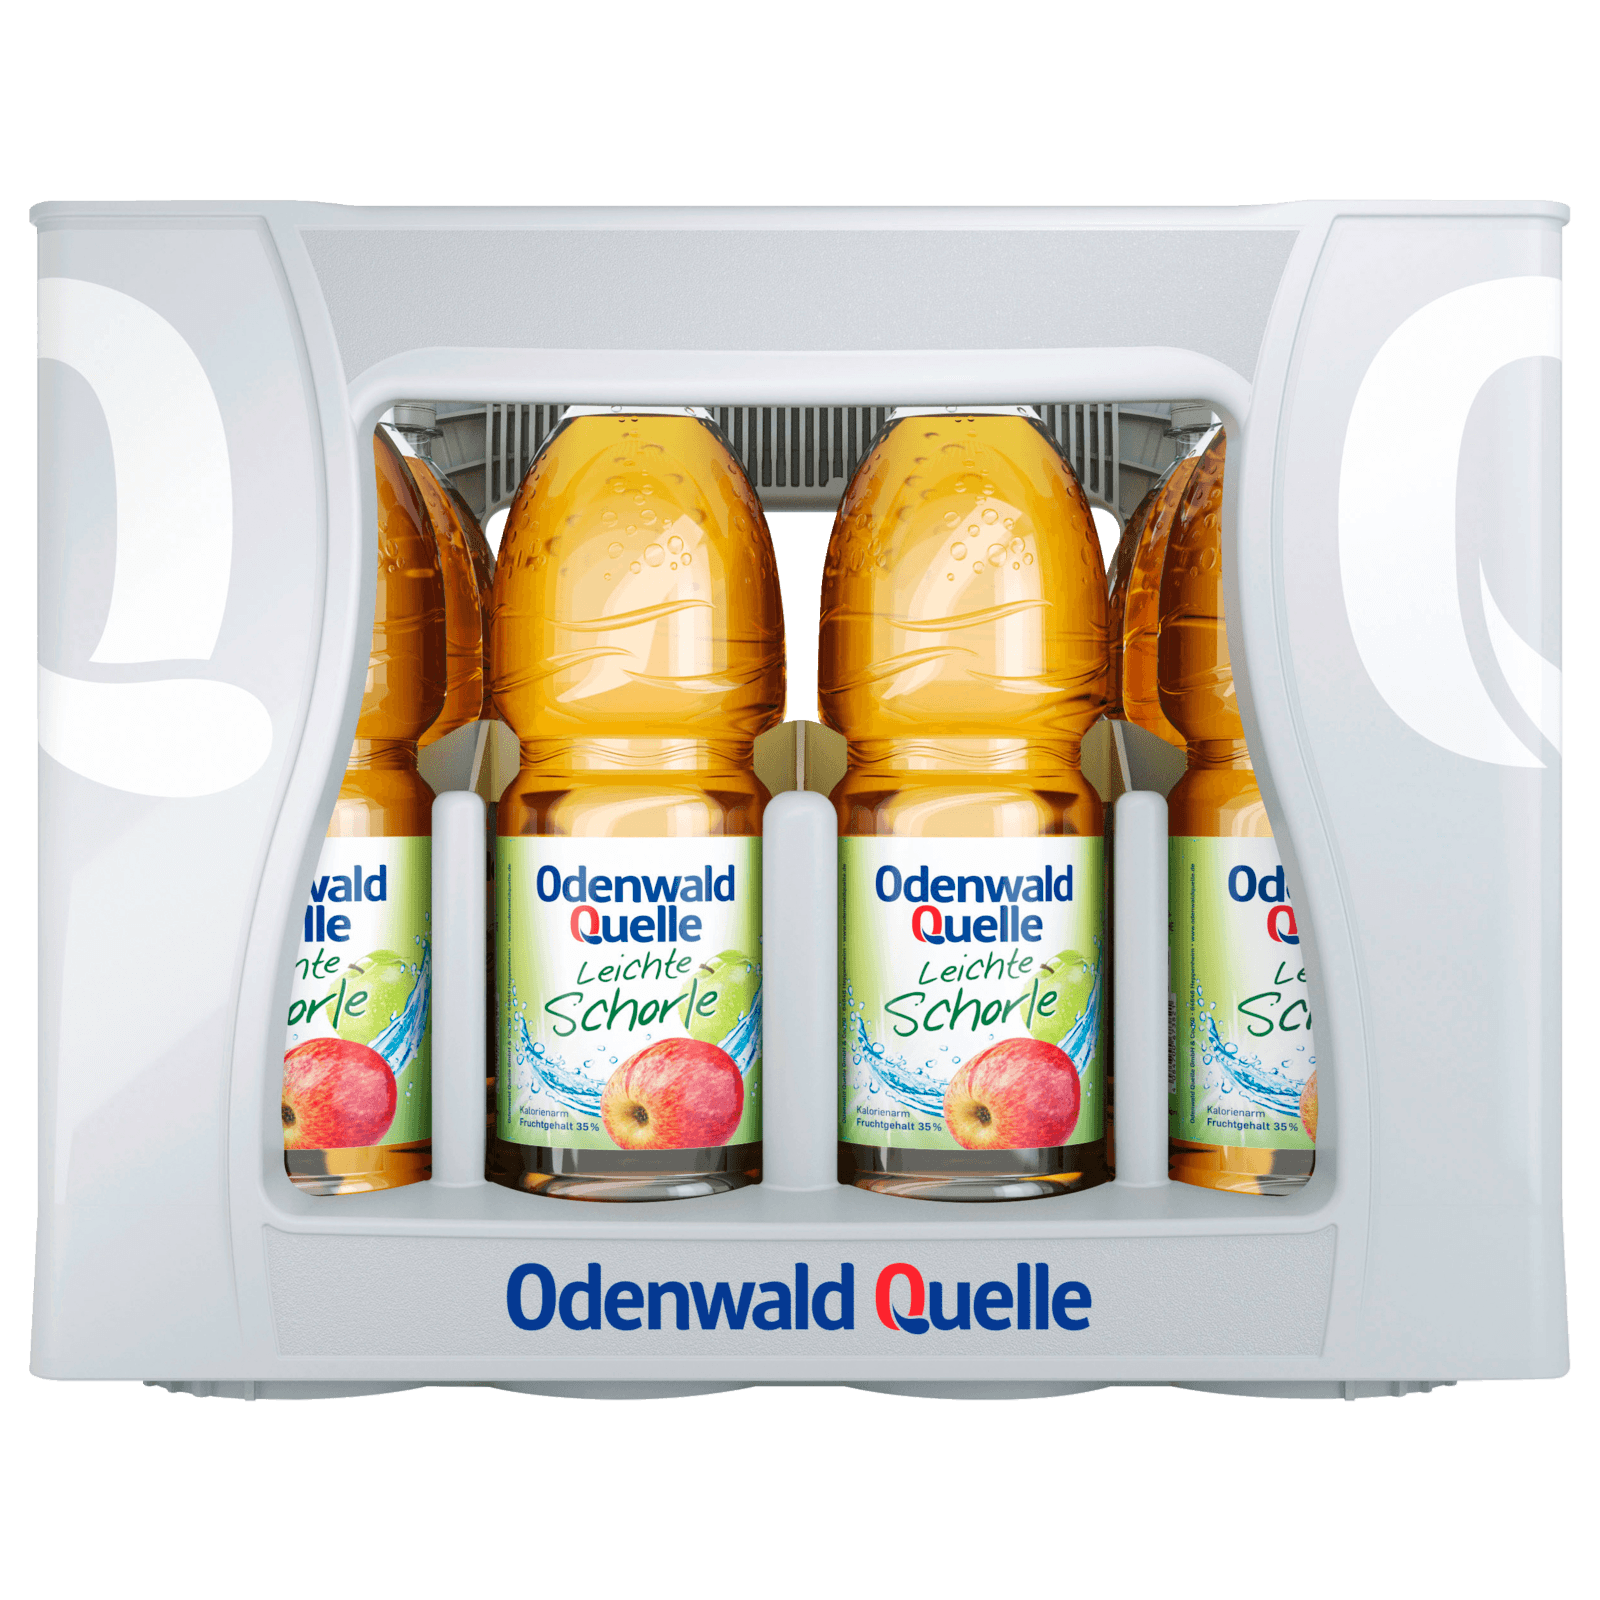 Odenwald Quelle Leichte Schorle Apfel 12x1l bei REWE online bestellen!